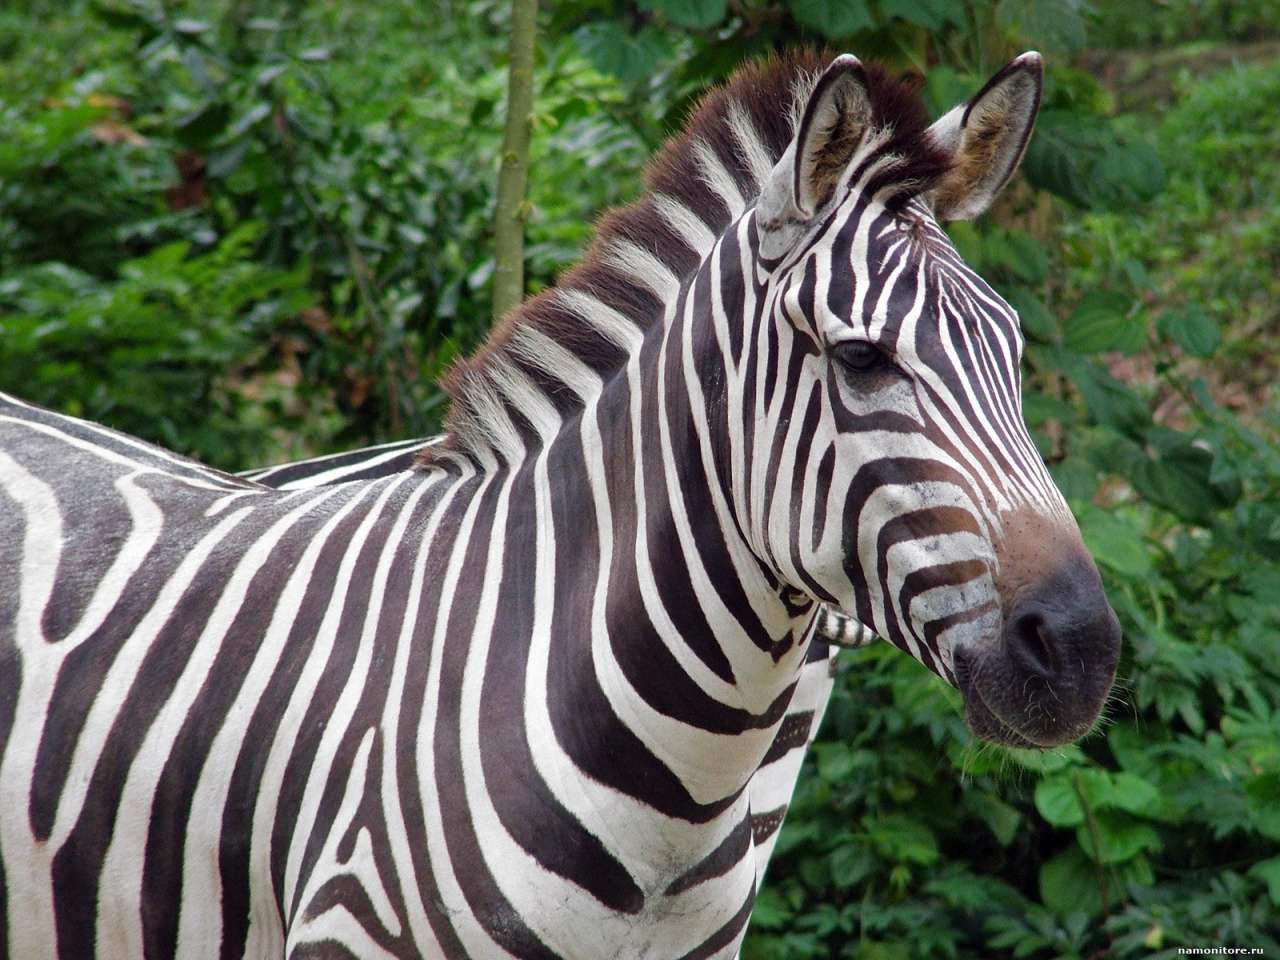 Британские ученые предложили новое объяснение того, как работают полоски зебр